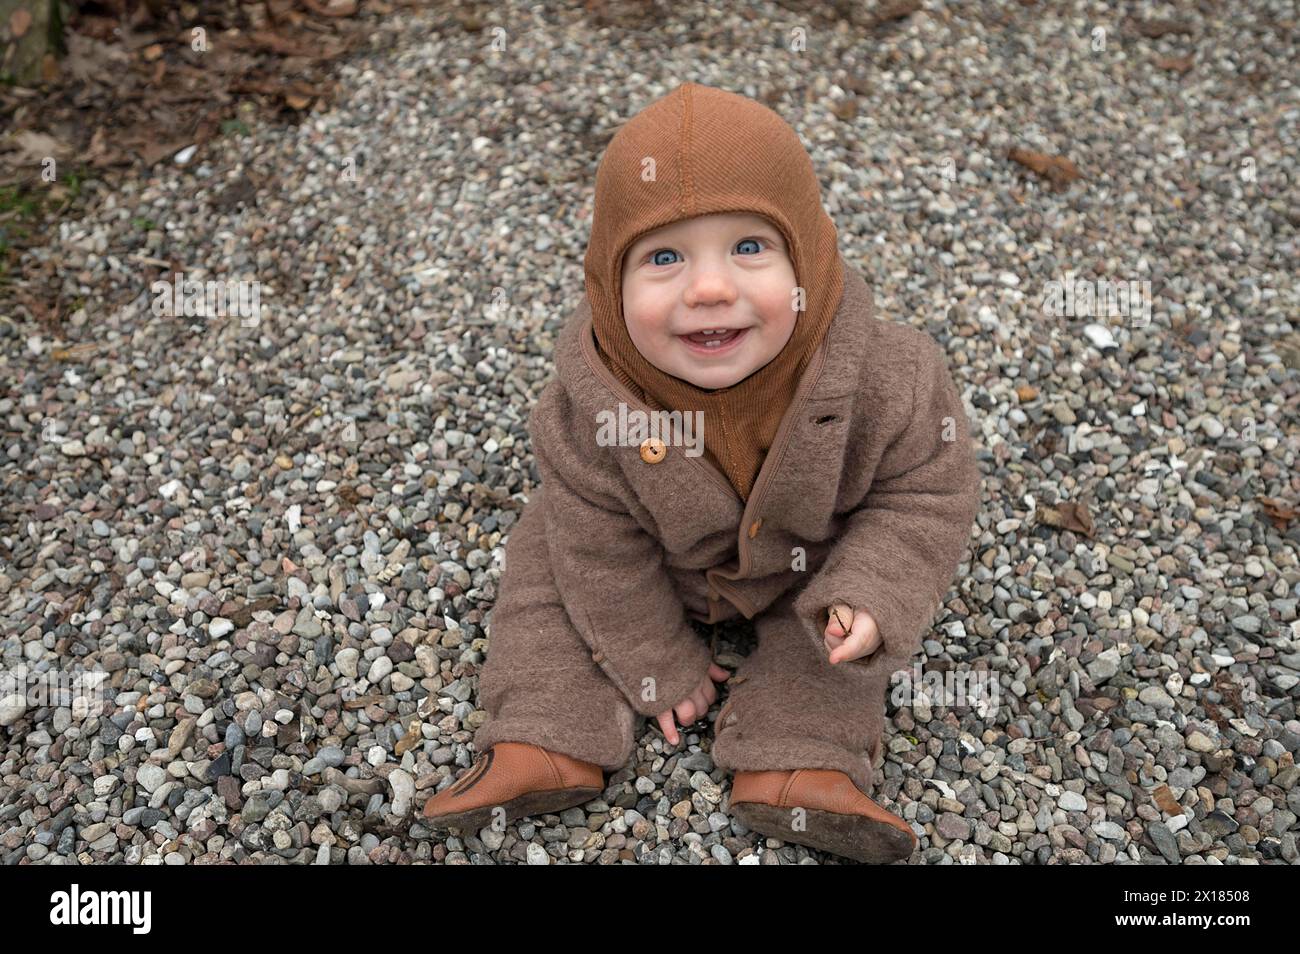 Lachendes Kind, 8 Monate, warm eingewickelt, auf dem Kies sitzend und mit Steinen spielend, Mecklenburg-Vorpommern, Deutschland Stockfoto